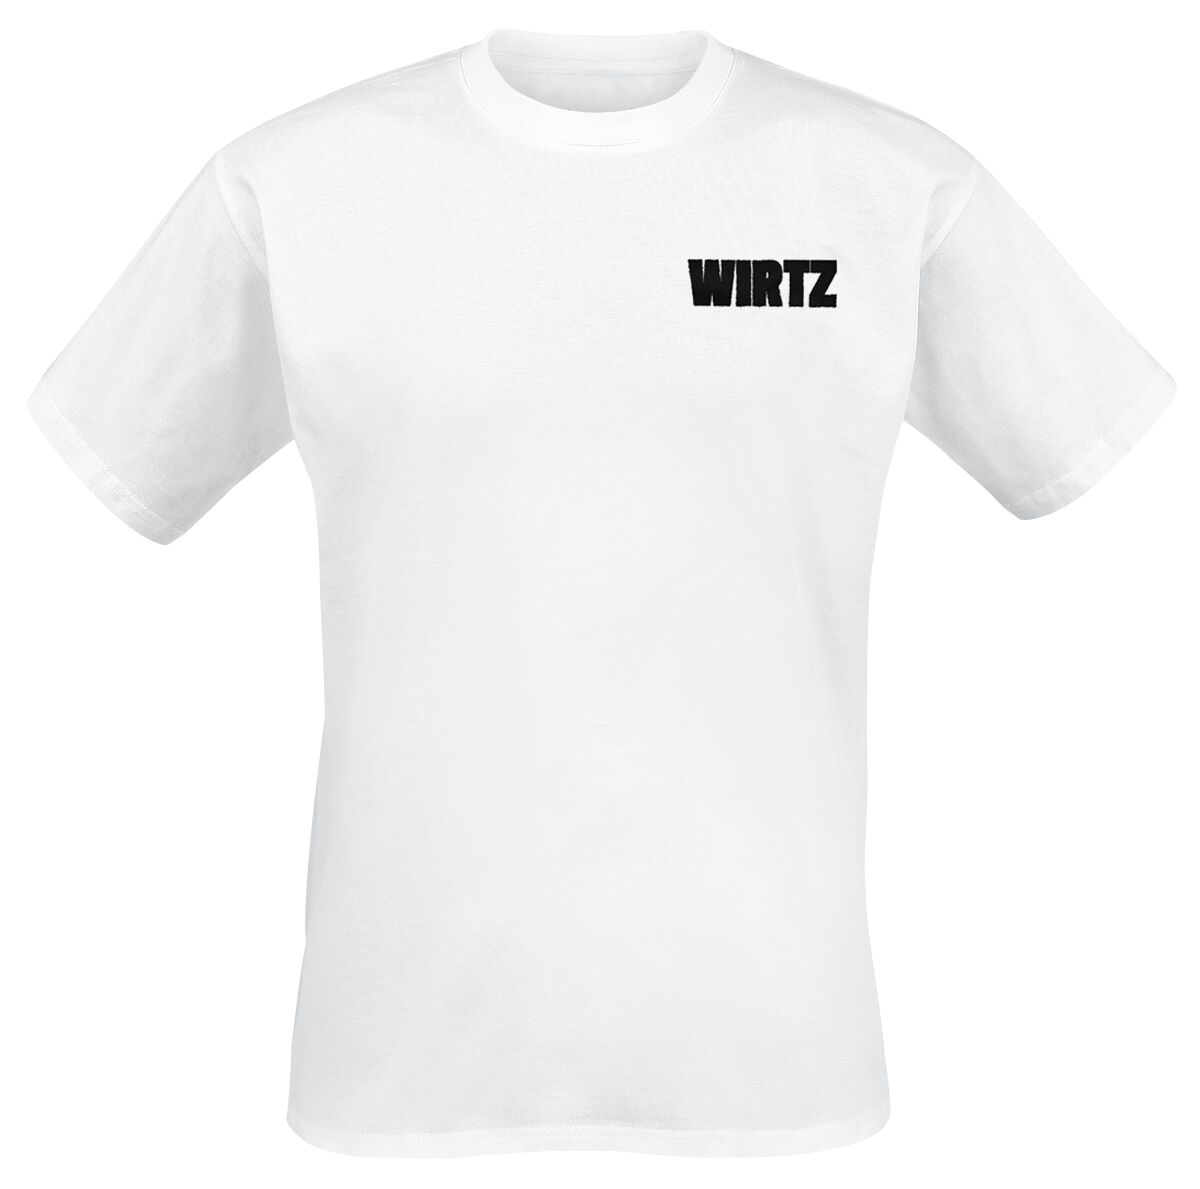 Wirtz T-Shirt - DNA - S bis XL - für Männer - Größe L - weiß  - Lizenziertes Merchandise!